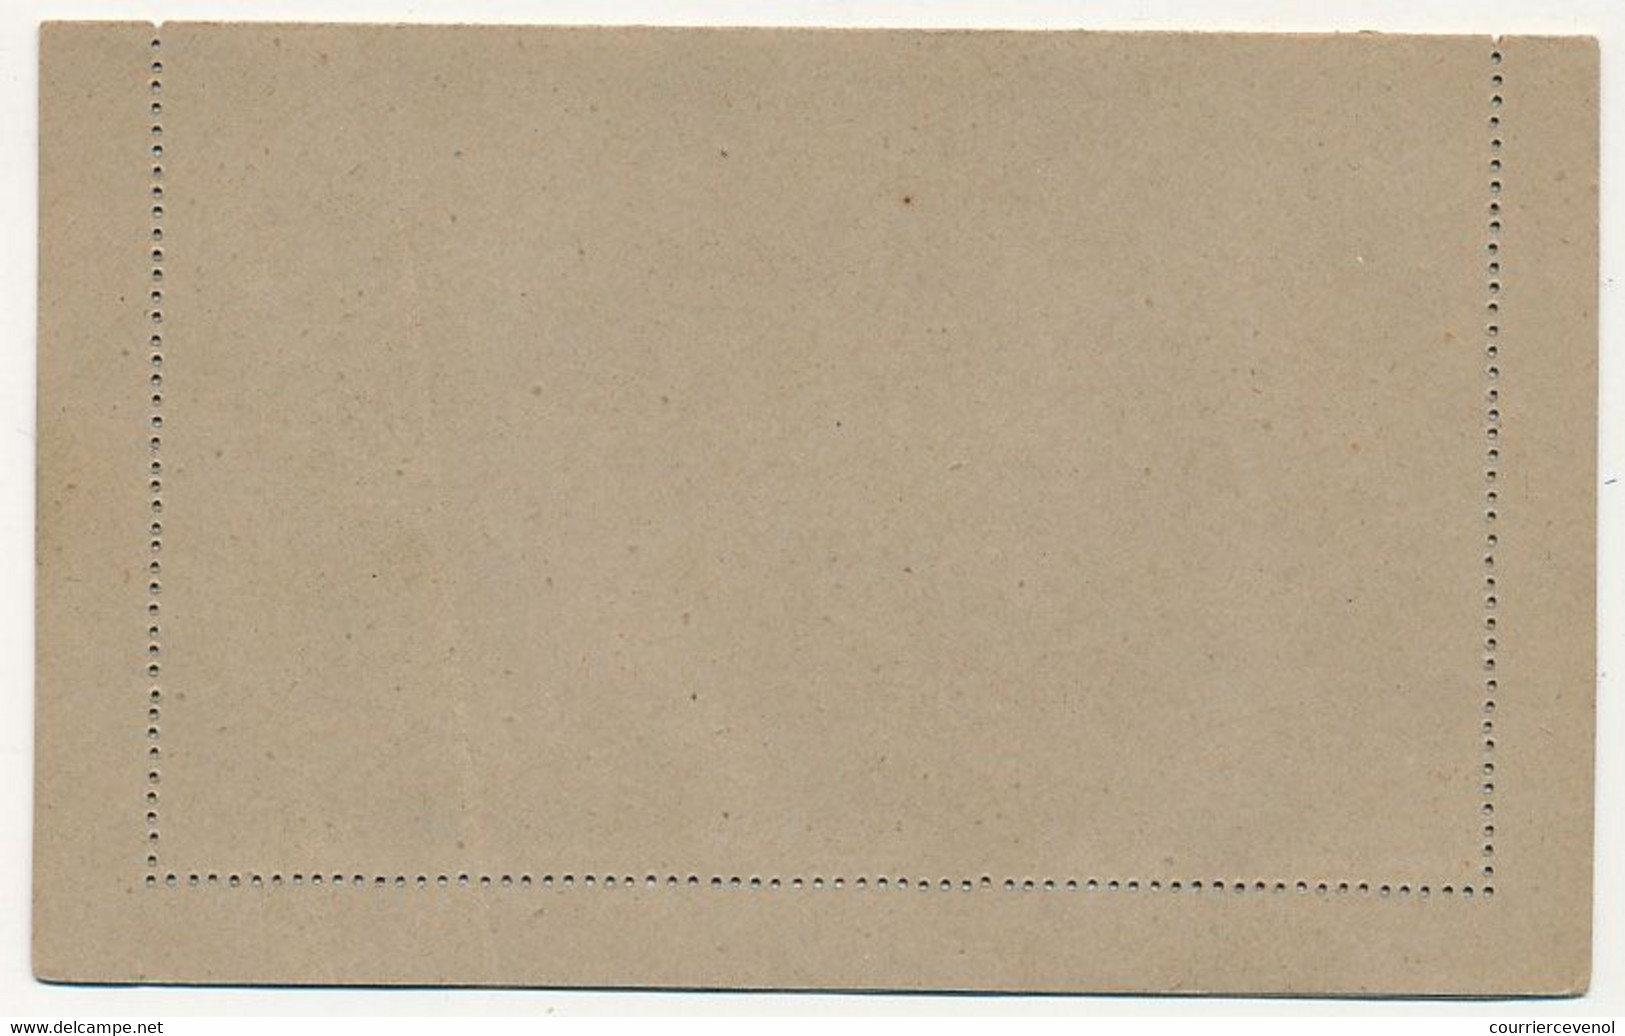 COTE D'IVOIRE - Entier Postal (Carte-Lettre) 15c Groupe Bleu Foncé Sur Gris - Ref CL 1 - Unused Stamps